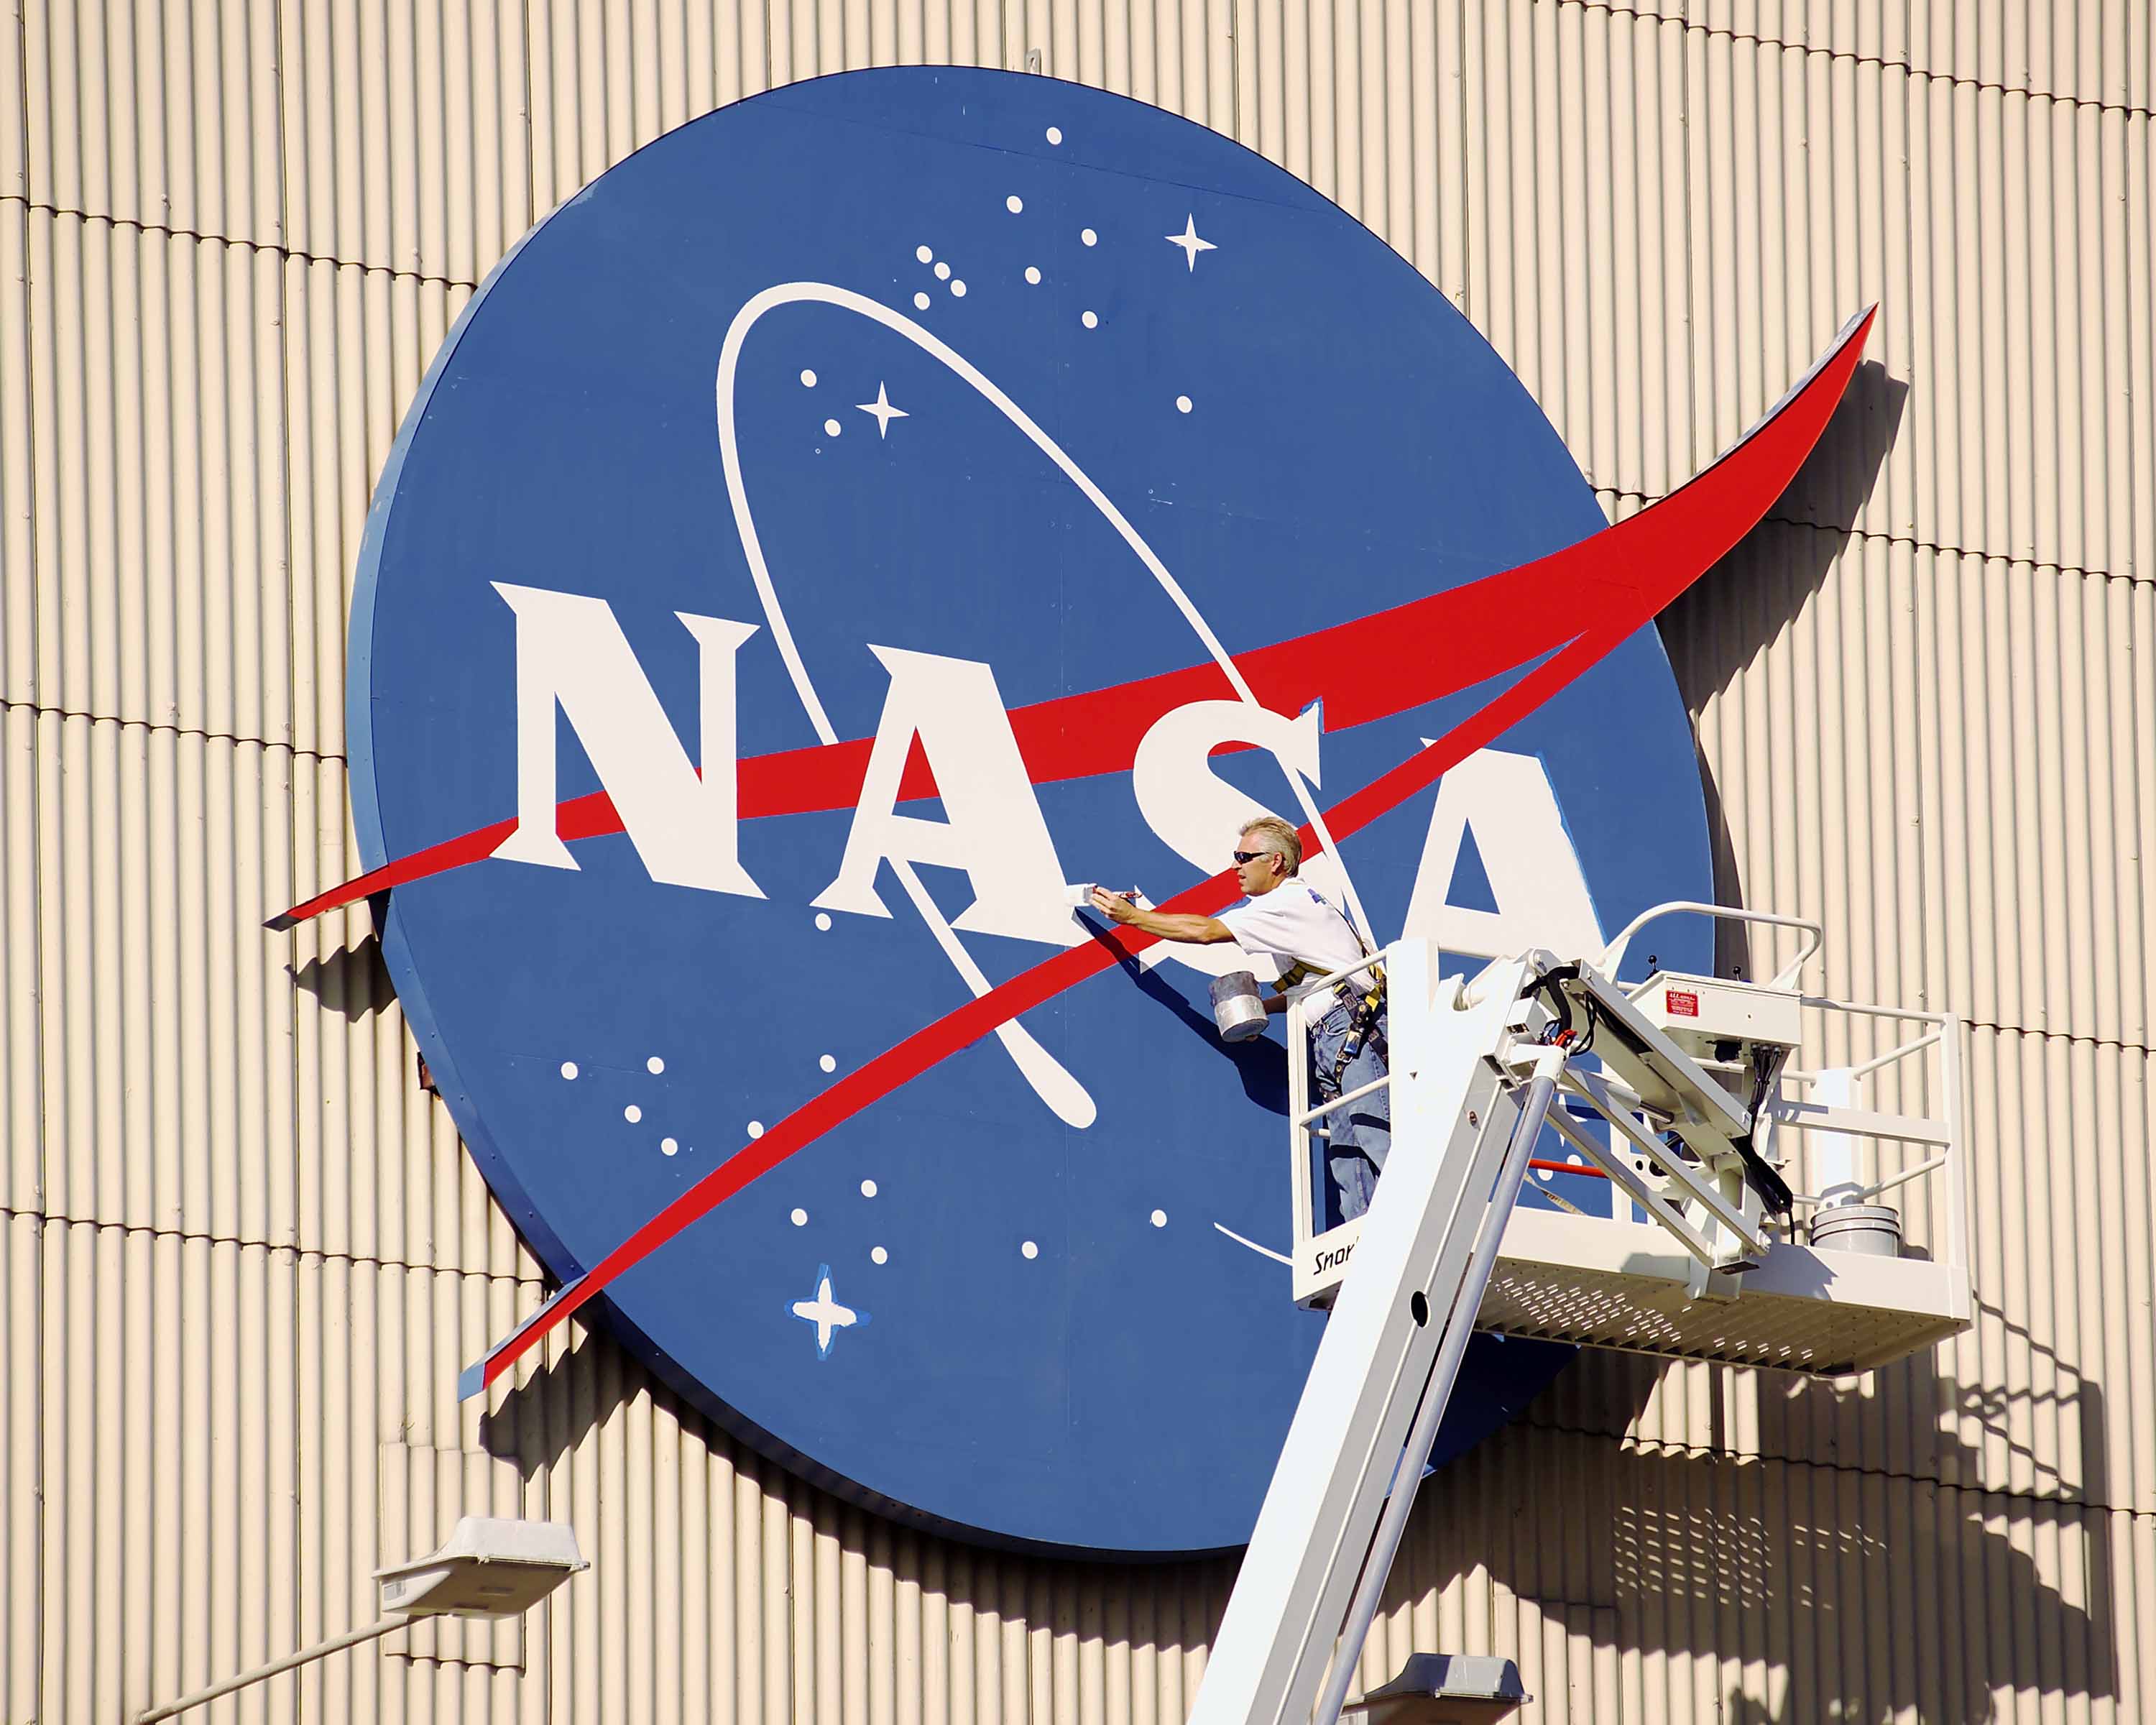 NASA Logo - Symbols of NASA